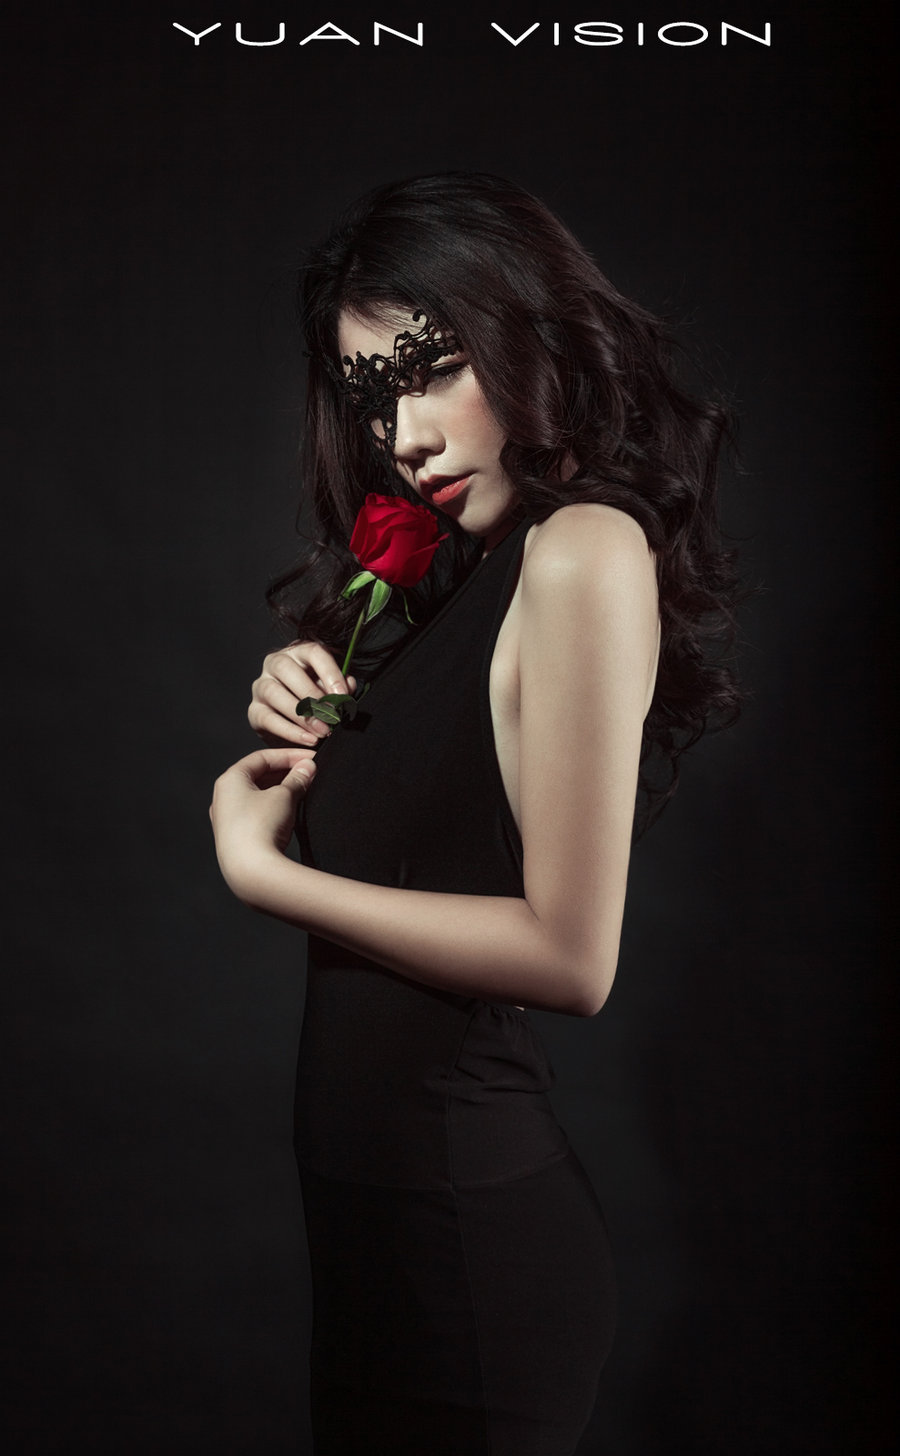 【当黑玫瑰爱上红玫瑰摄影图片】重庆人像摄影